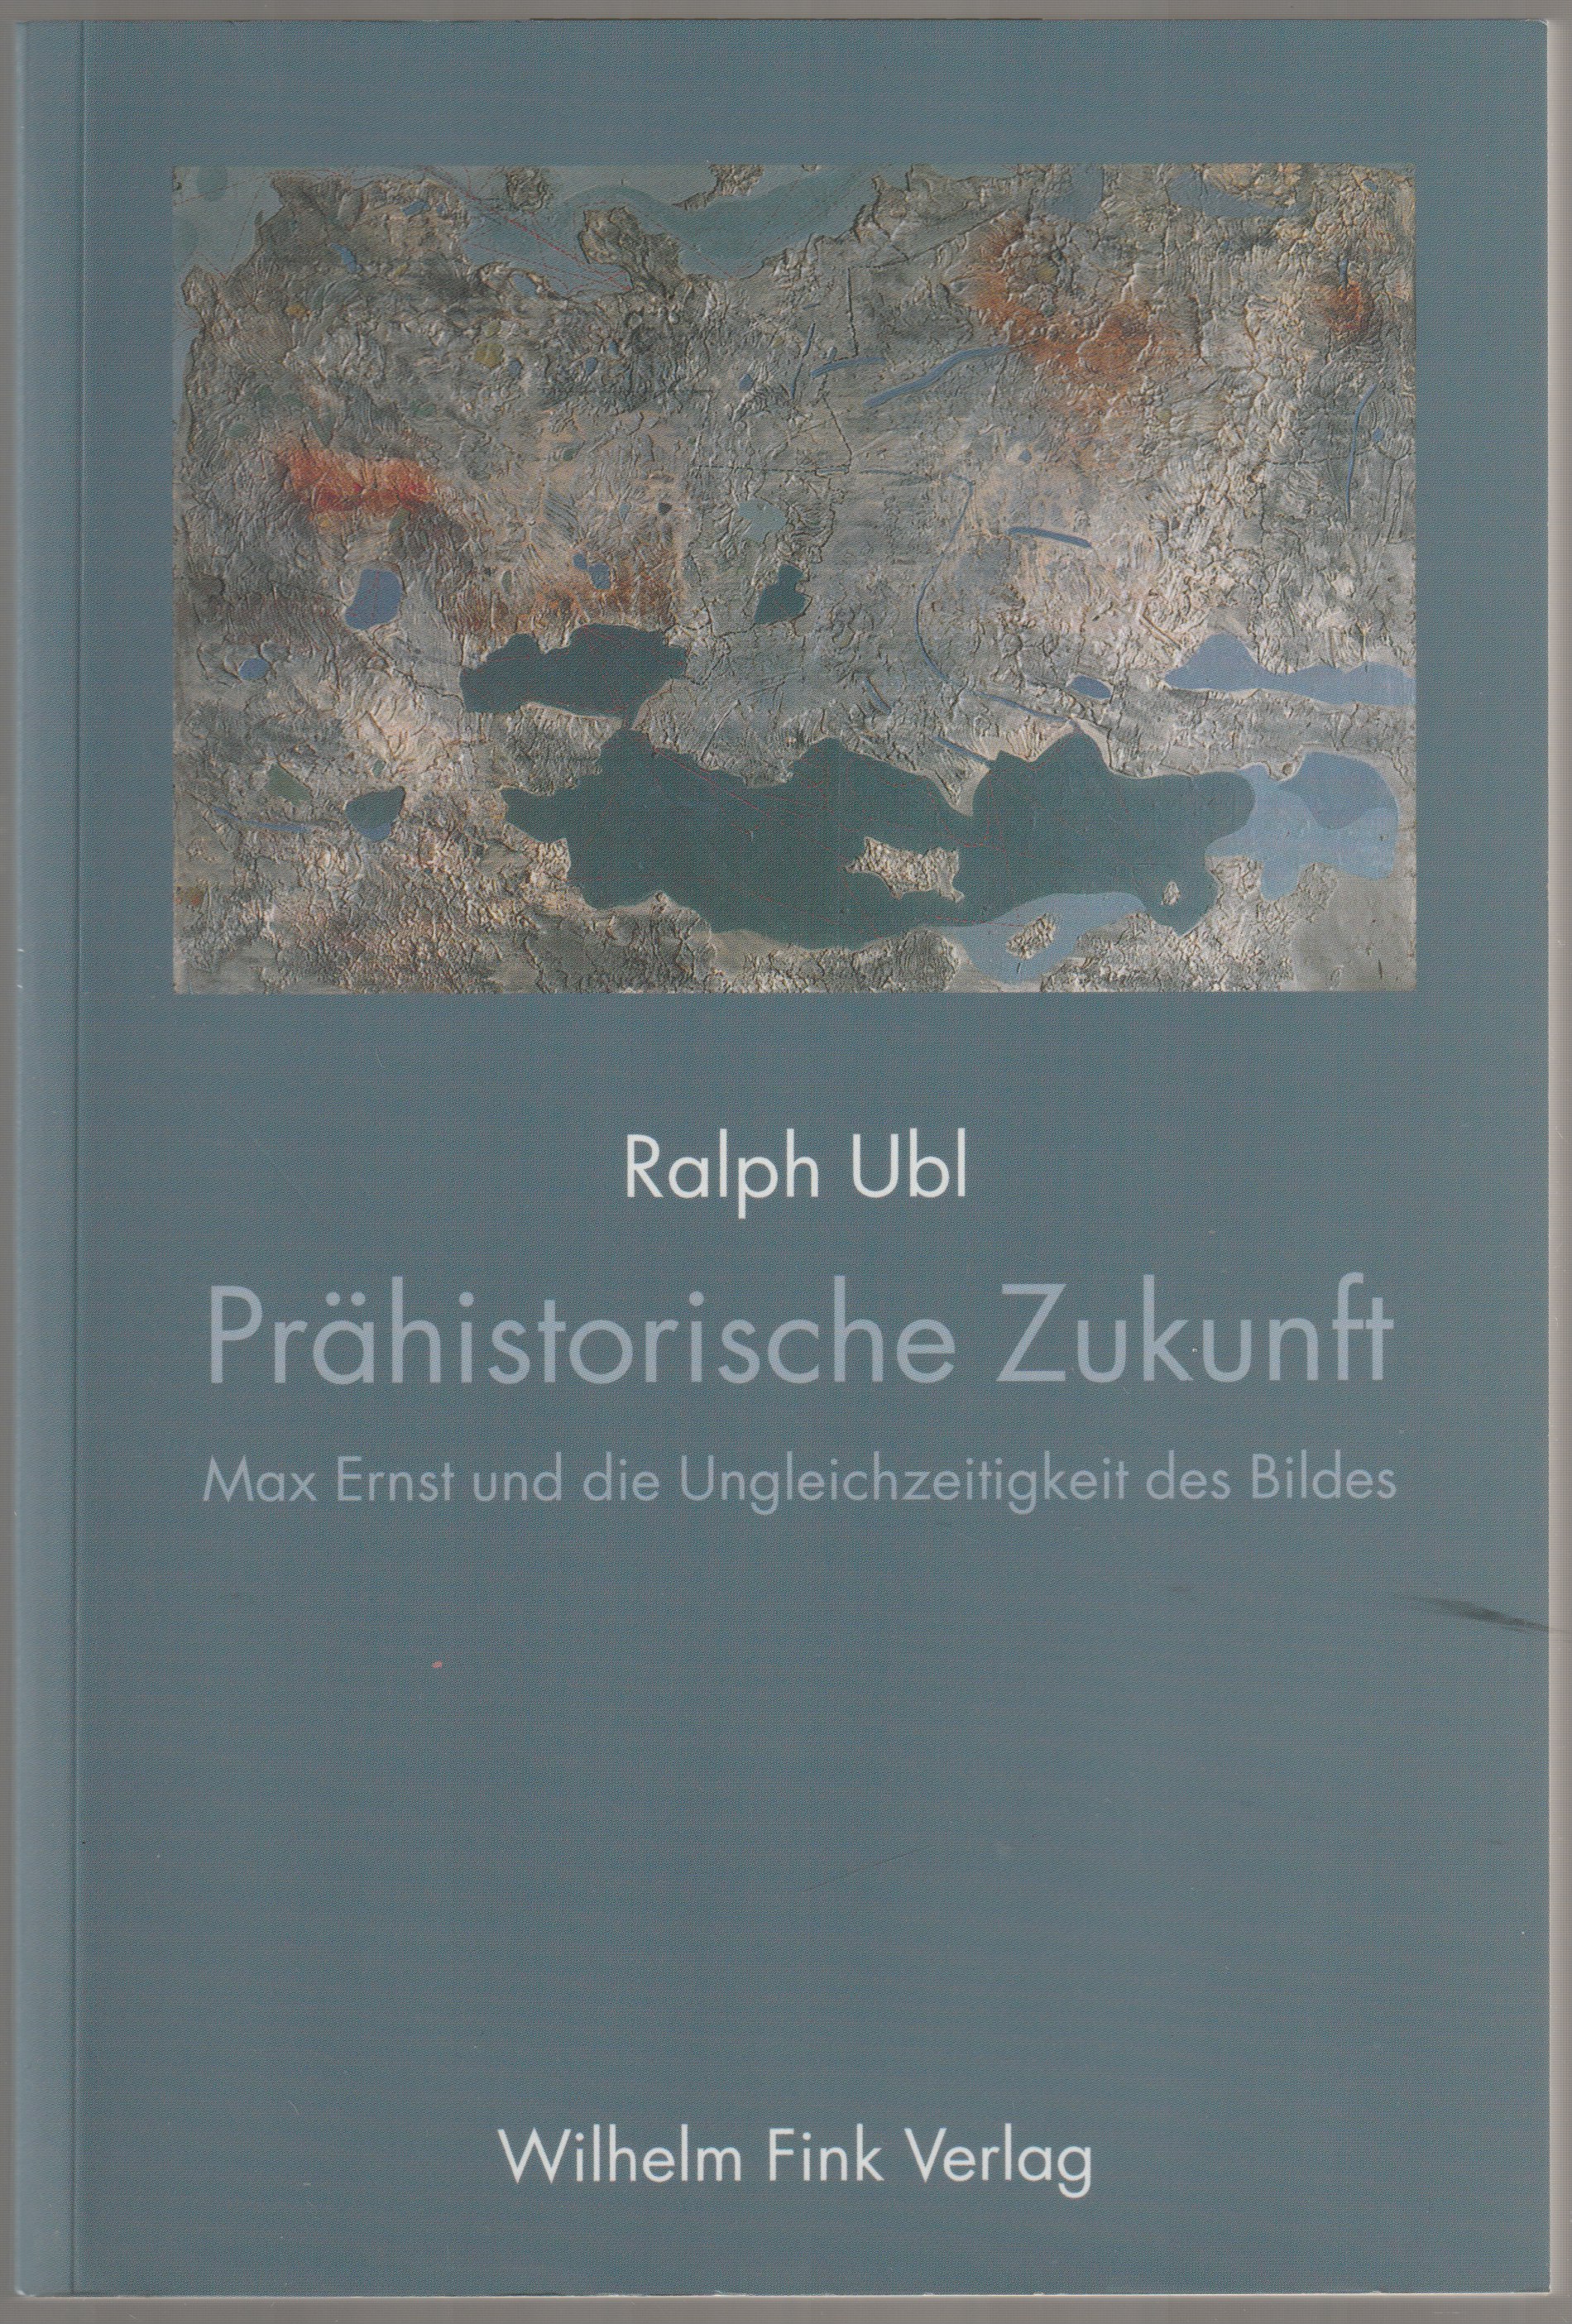 Prehistorische Zukunft : Max Ernst und die Ungleichzeitigkeit des Bildes.